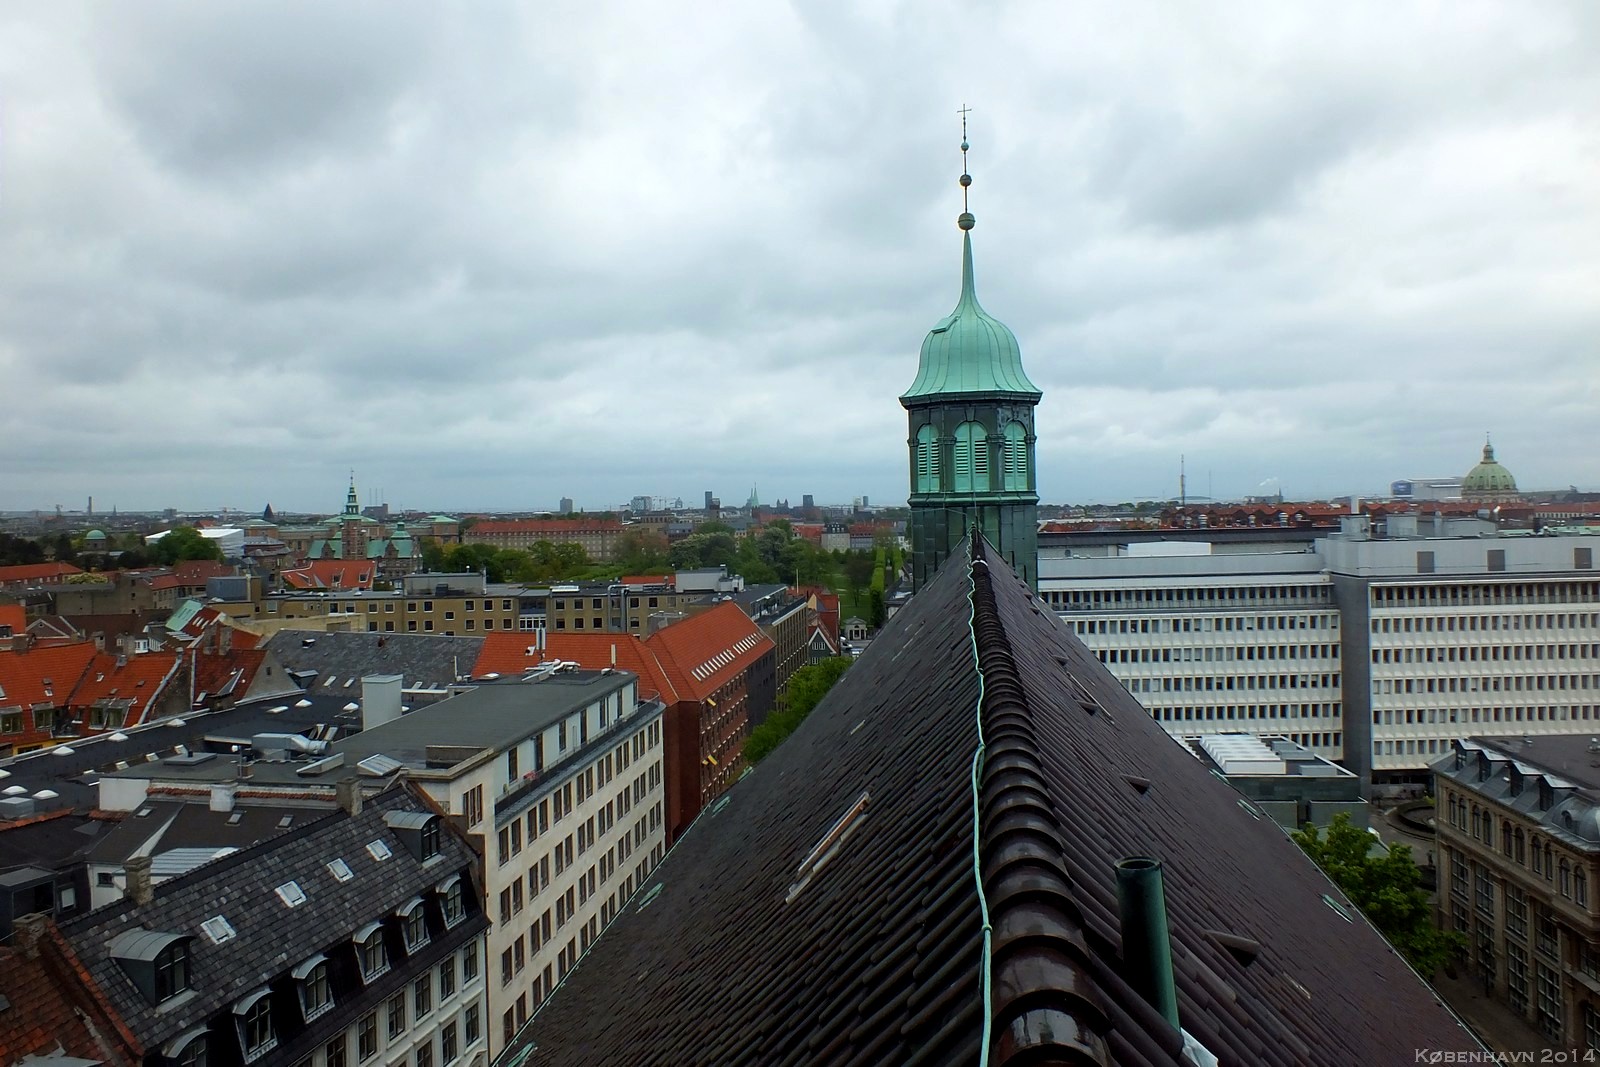 Rundetårn, København, Denmark